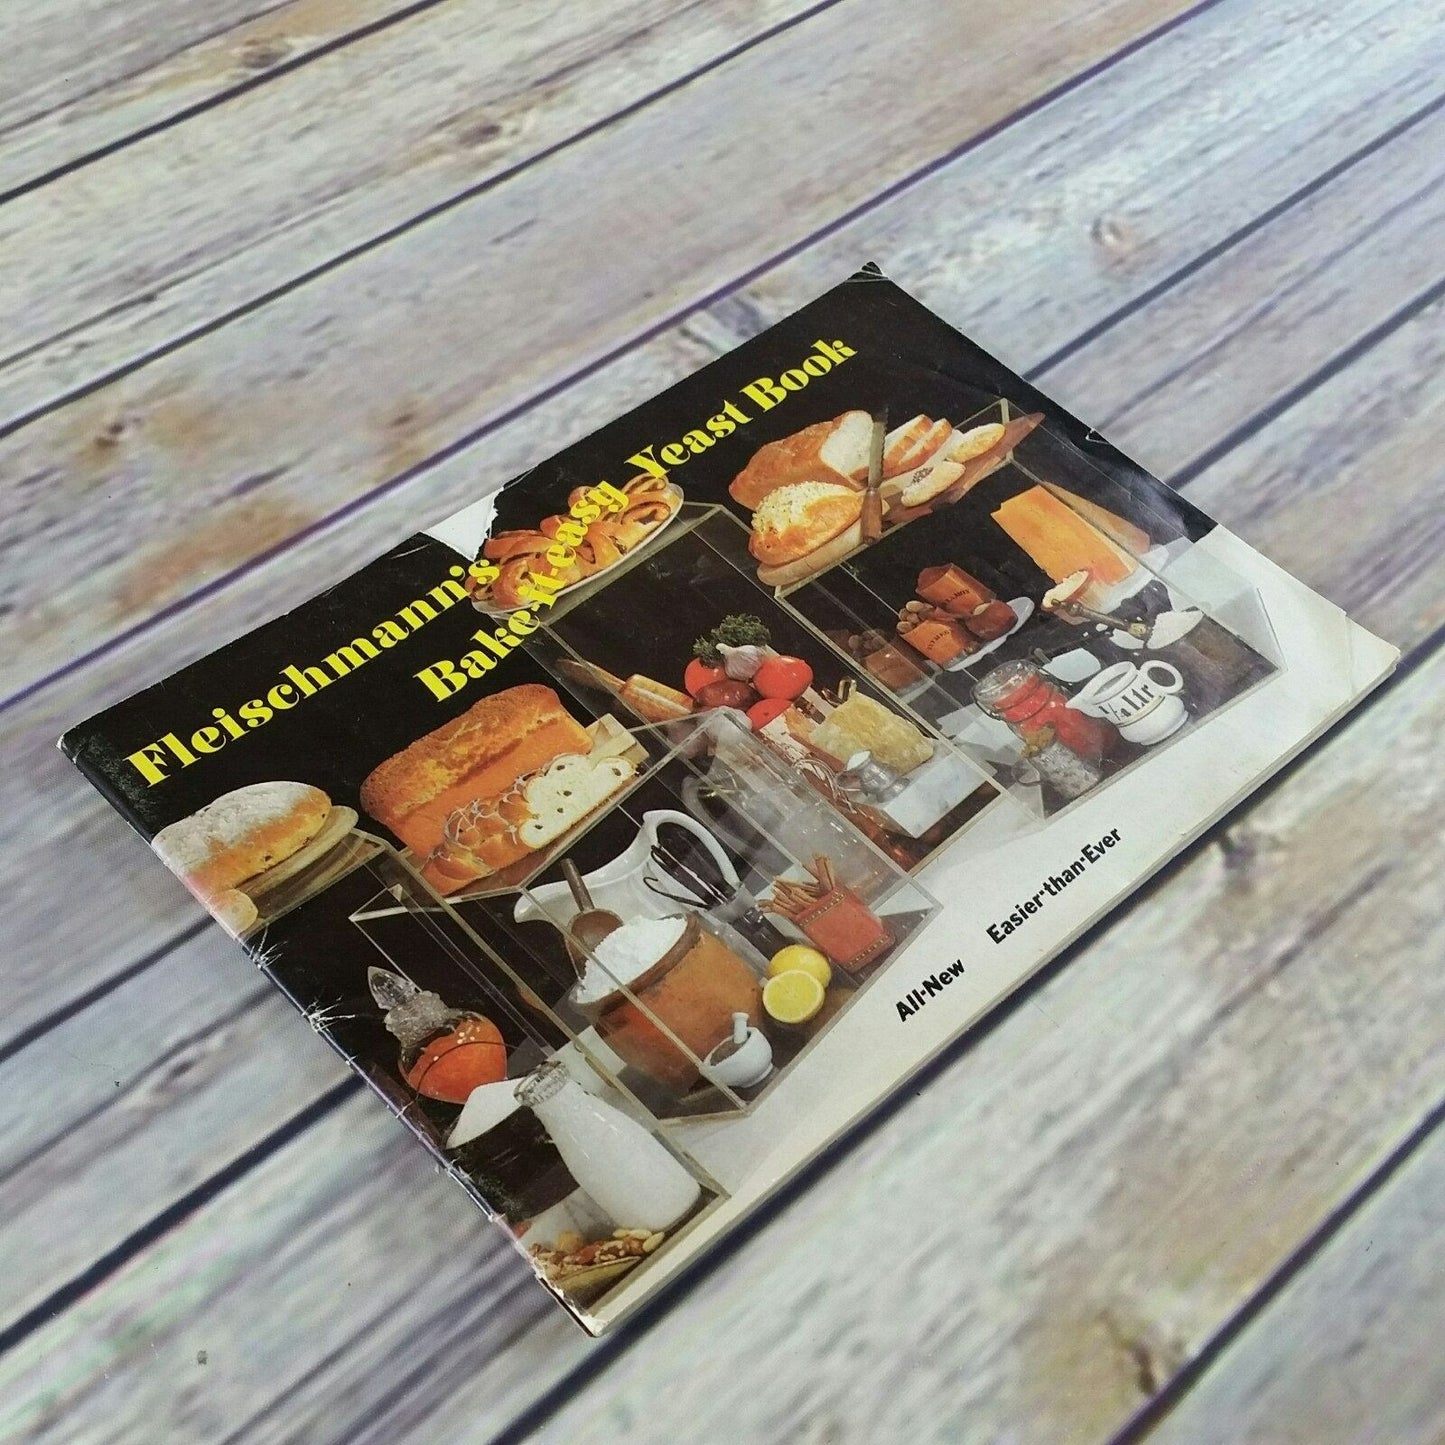 Vintage Cookbook Fleischmann Yeast Bake it Easy Recipes Booklet 1970s Breads Rolls